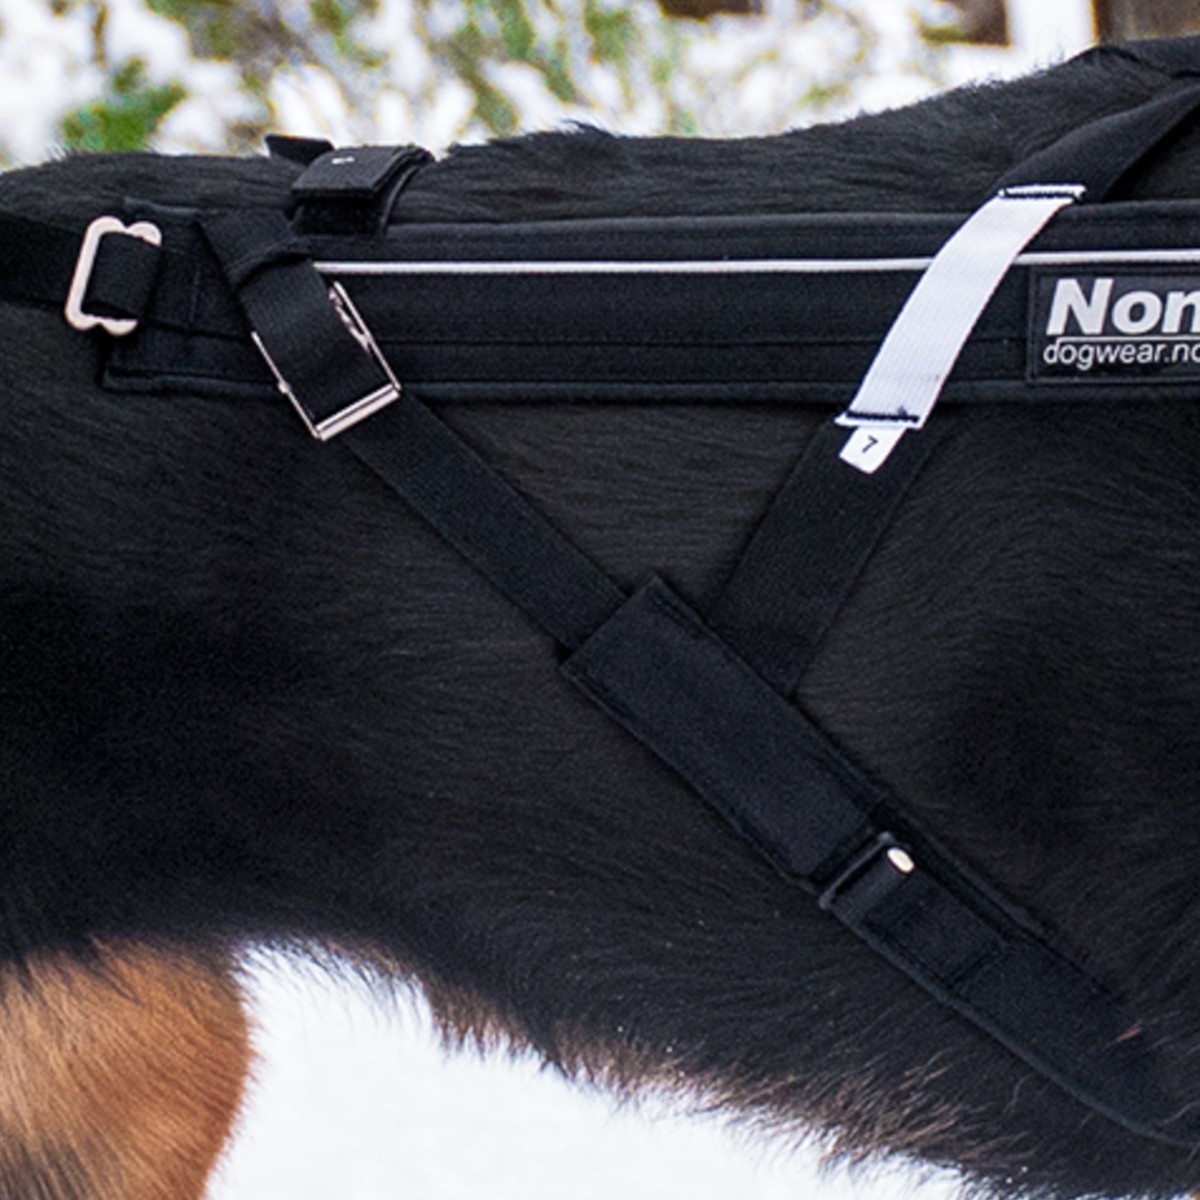 Non-Stop dogwear  Sangles de rechange pour harnais Freemotion et Combined  2,5cm